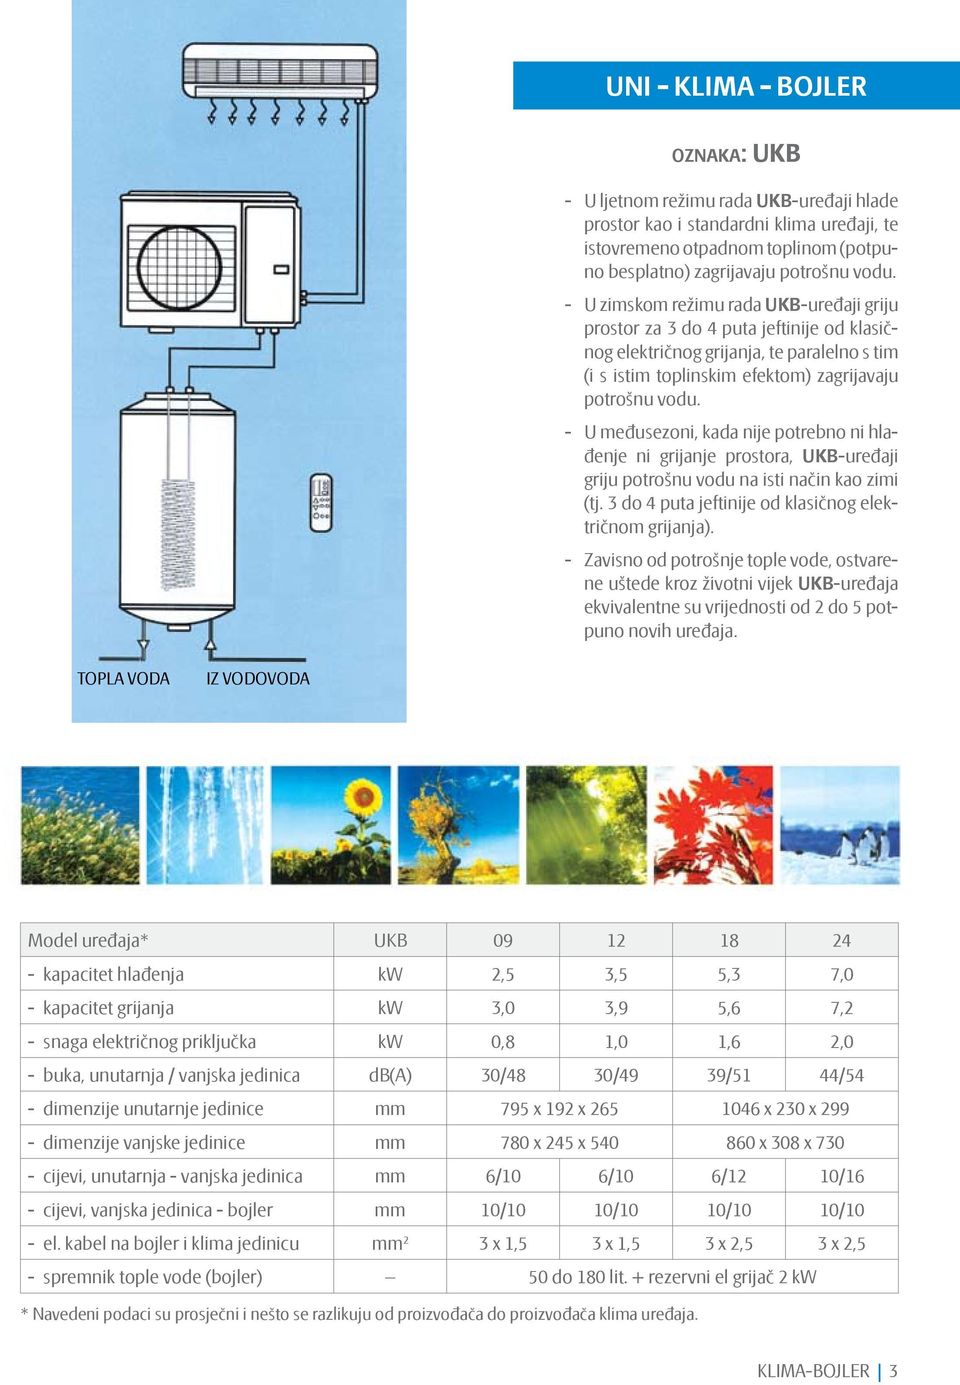 U međusezoni, kada nije potrebno ni hlađenje ni grijanje prostora, UKB-uređaji griju potrošnu vodu na isti način kao zimi (tj. 3 do 4 puta jeftinije od klasičnog električnom grijanja).